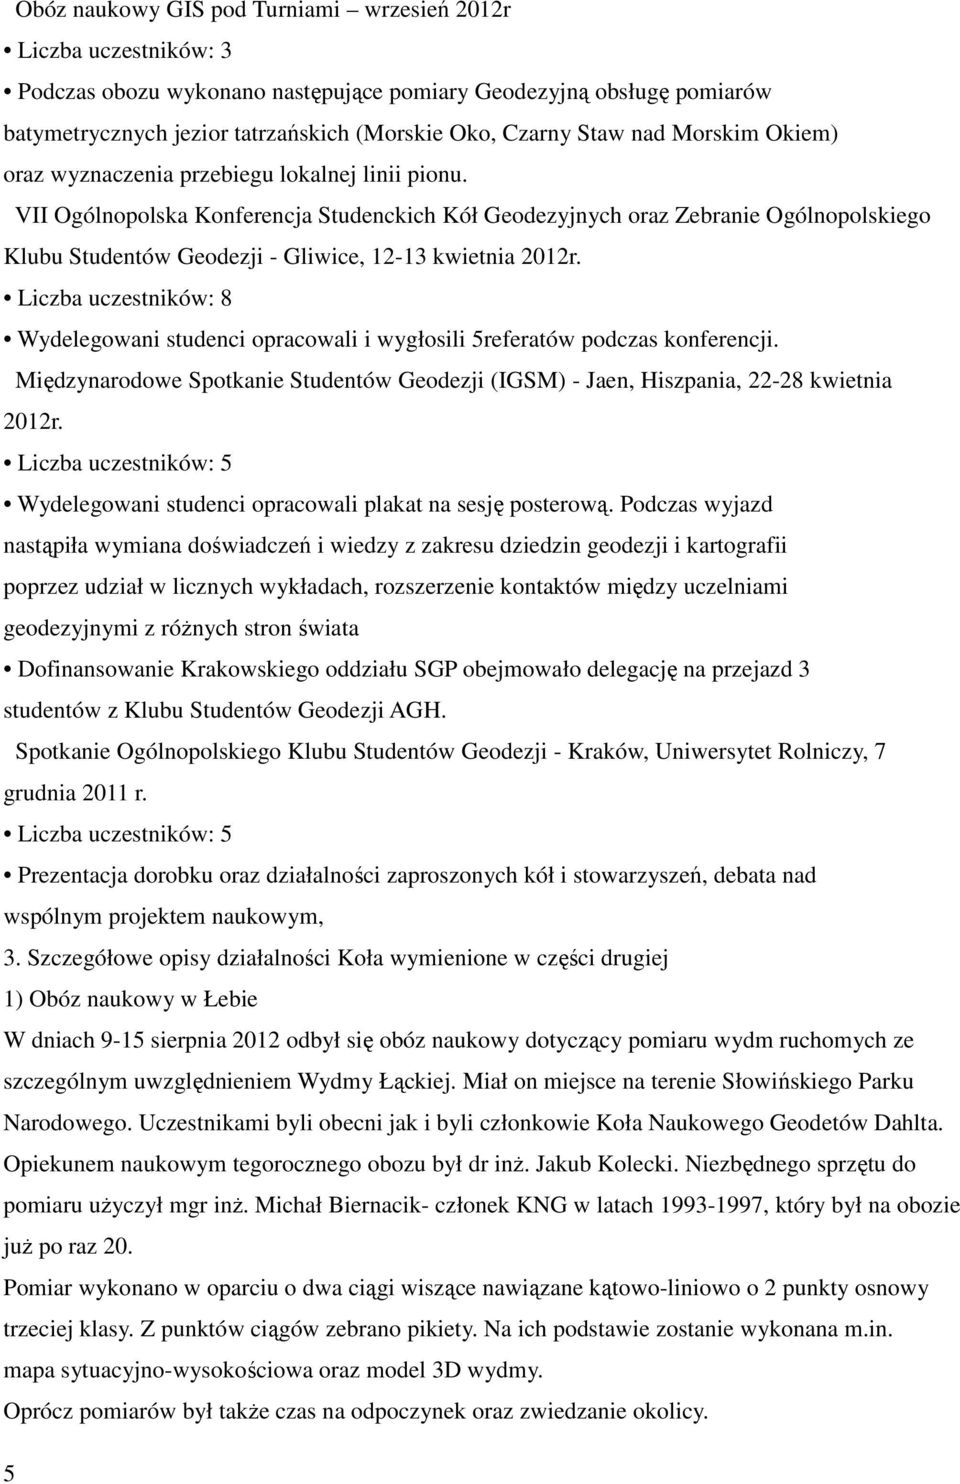 VII Ogólnopolska Konferencja Studenckich Kół Geodezyjnych oraz Zebranie Ogólnopolskiego Klubu Studentów Geodezji - Gliwice, 12-13 kwietnia 2012r.